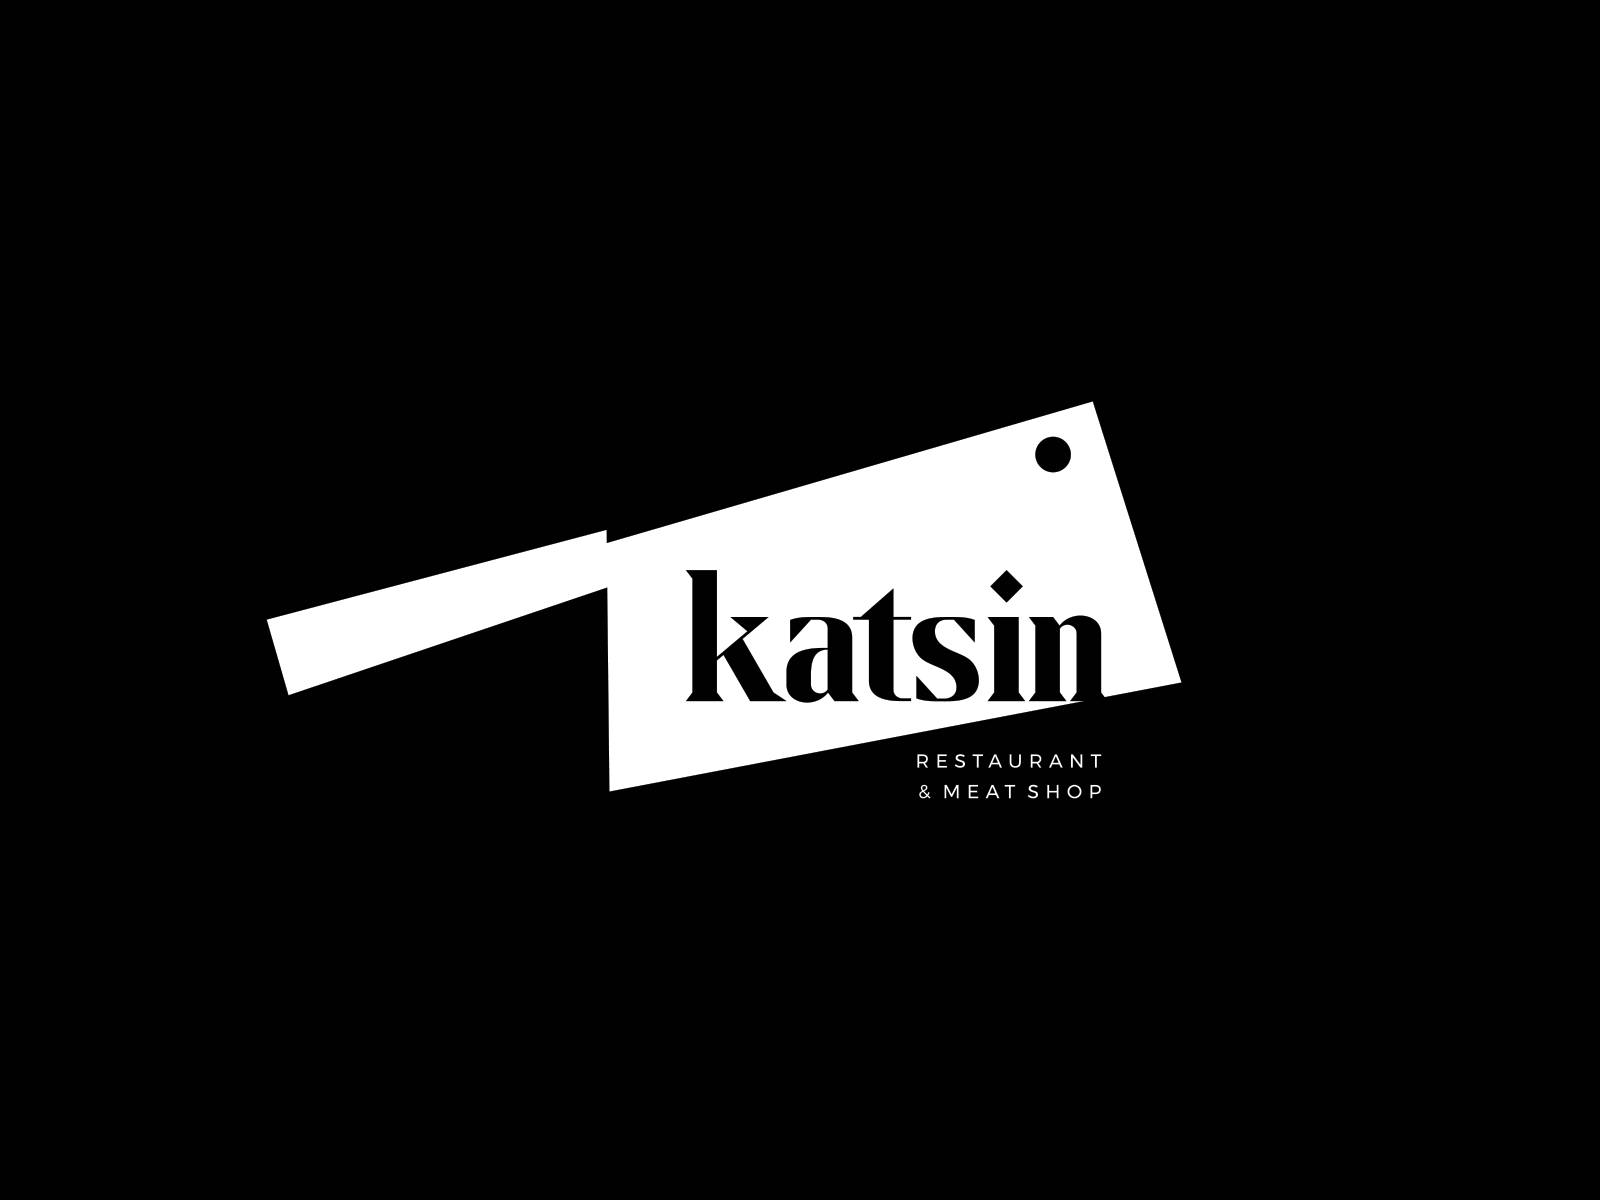 Katsin Restaurant Logo Design and Branding braind branding branding agency gif logo logodesign restaurant branding restaurant logo yerevan